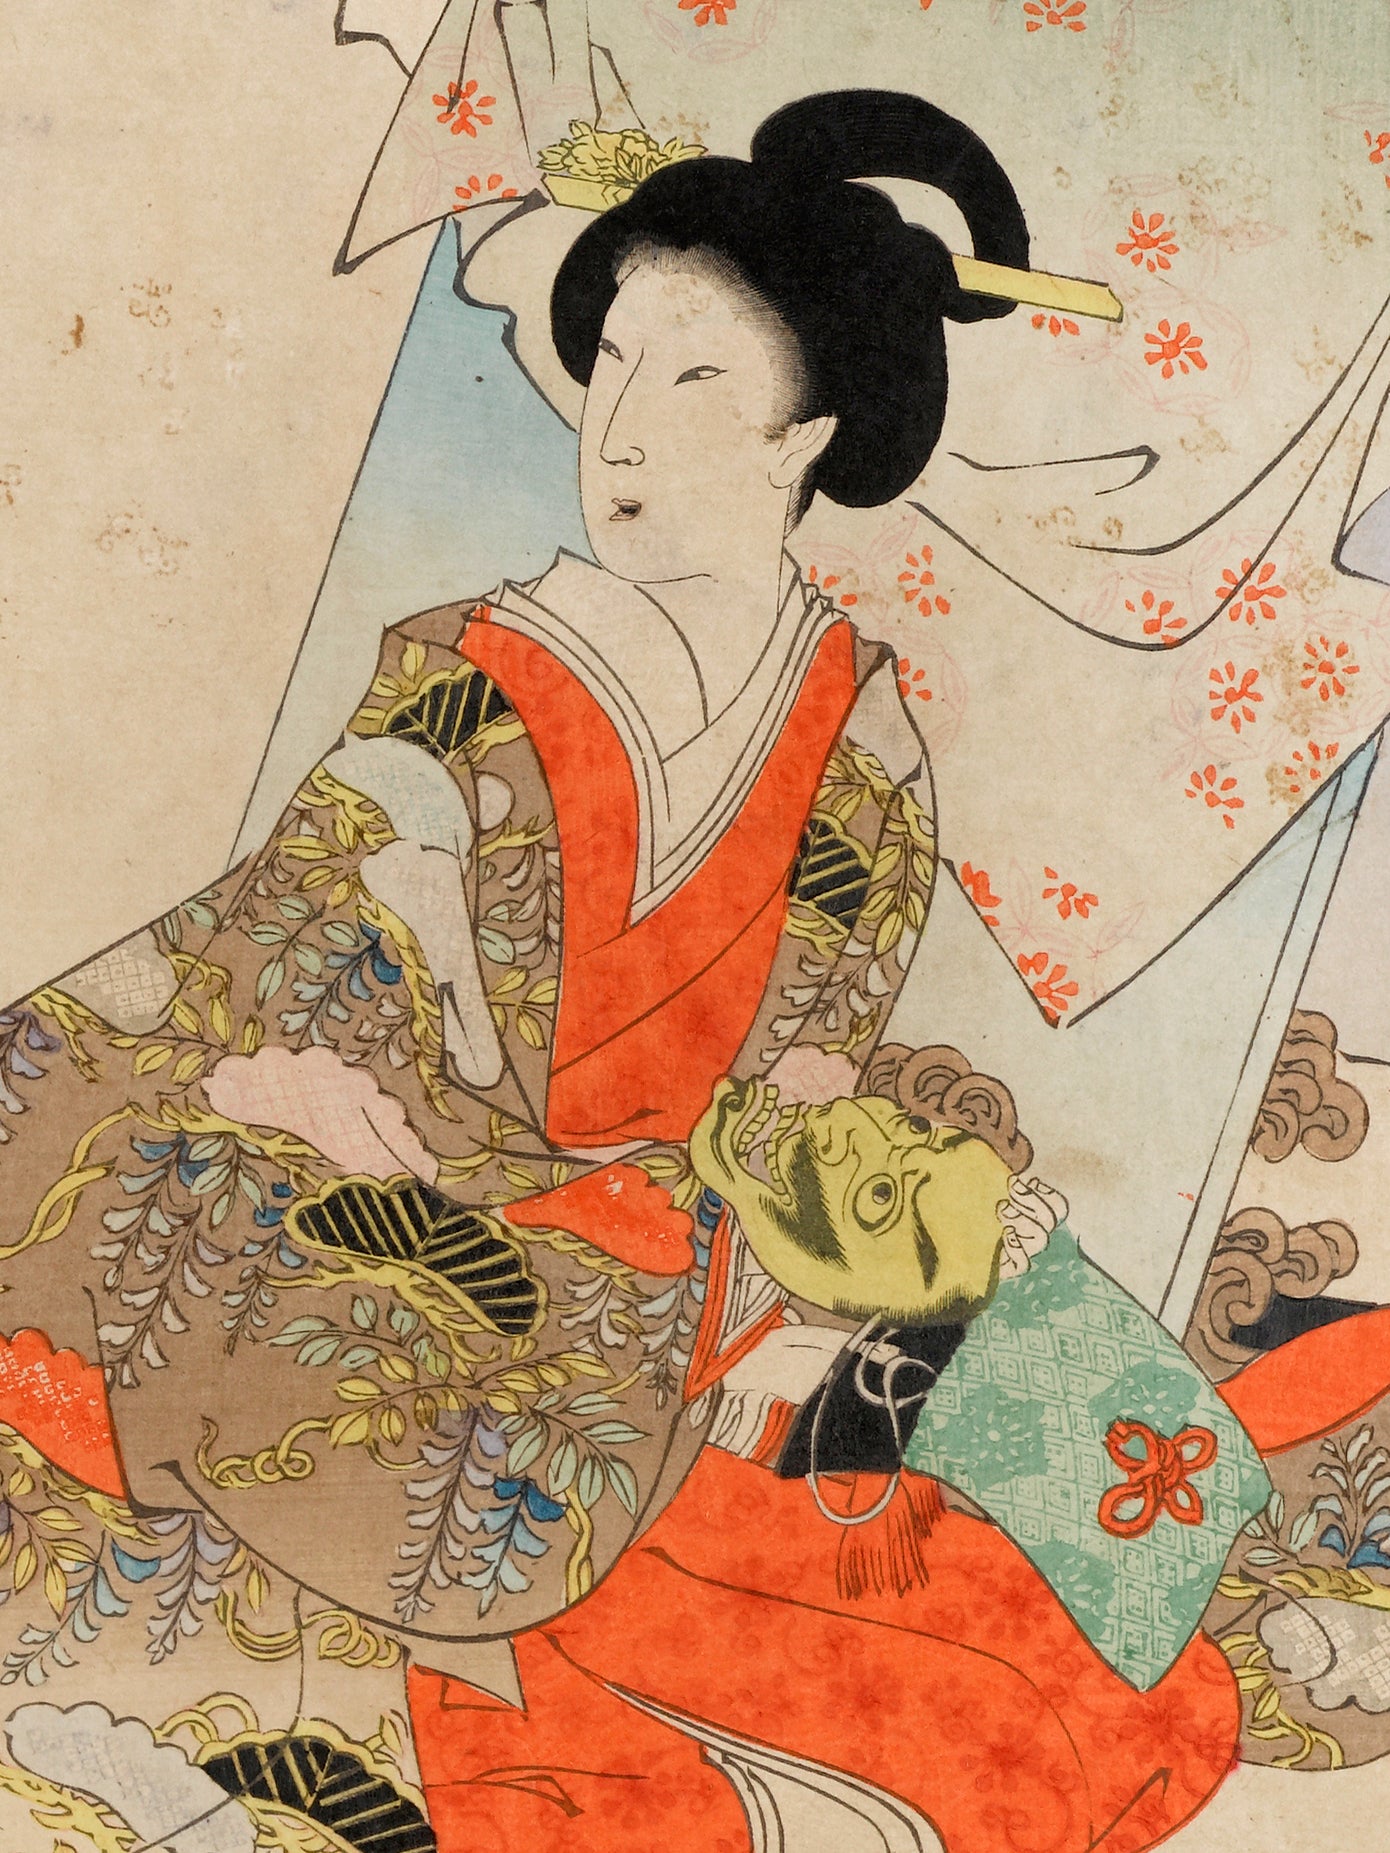 estampe japonaise triptyque de Chikanobu coulisse de théatre No Intérieur Palais de Chiyoda femme kimono glycine masque masculin or dans les mains